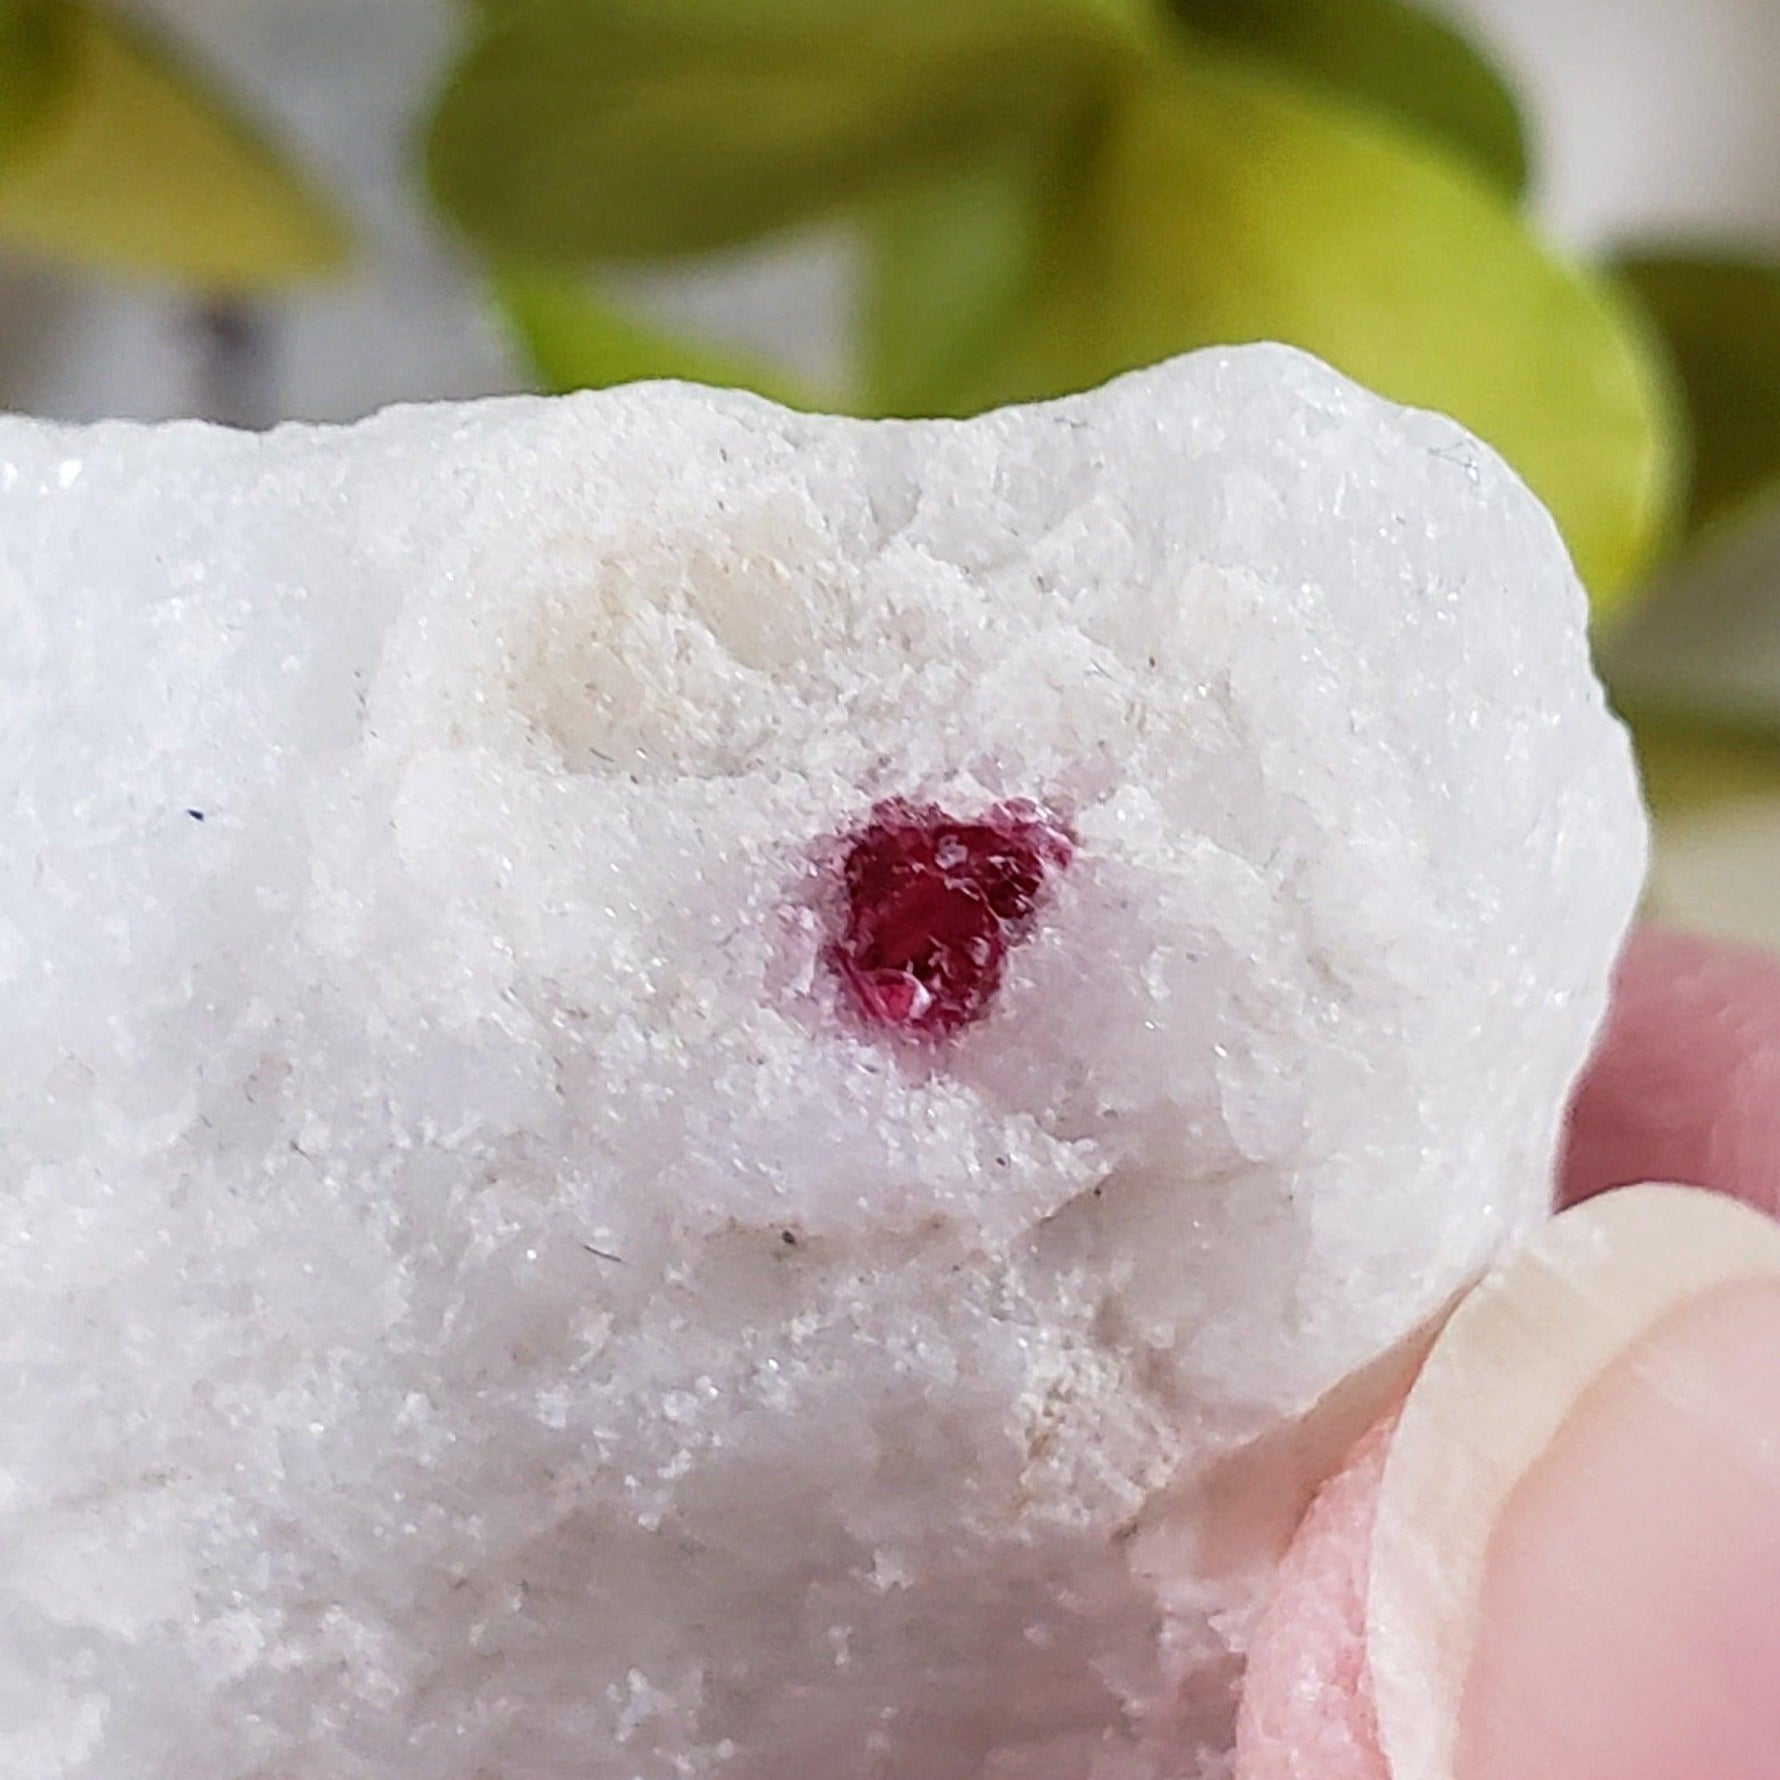 Spinel Crystal in Marble Host | Red Spinel | 25 gr, 126.8 ct | Mogok, Myanmar